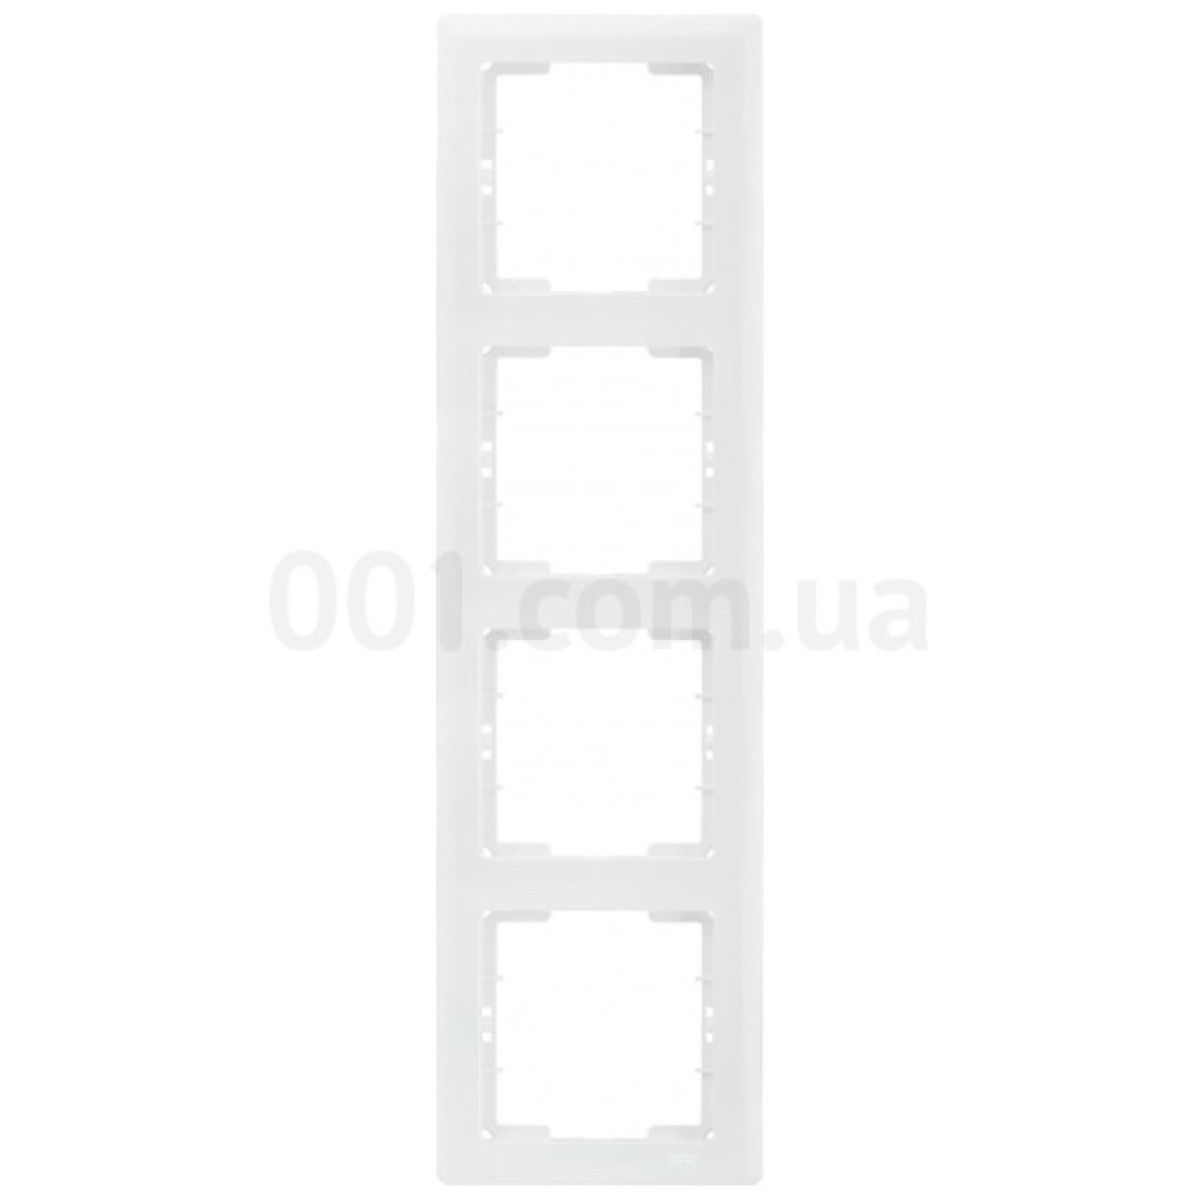 Рамка 4-постовая вертикальная белая РВ04-00-0-ББ серия BOLERO, IEK 256_256.jpg